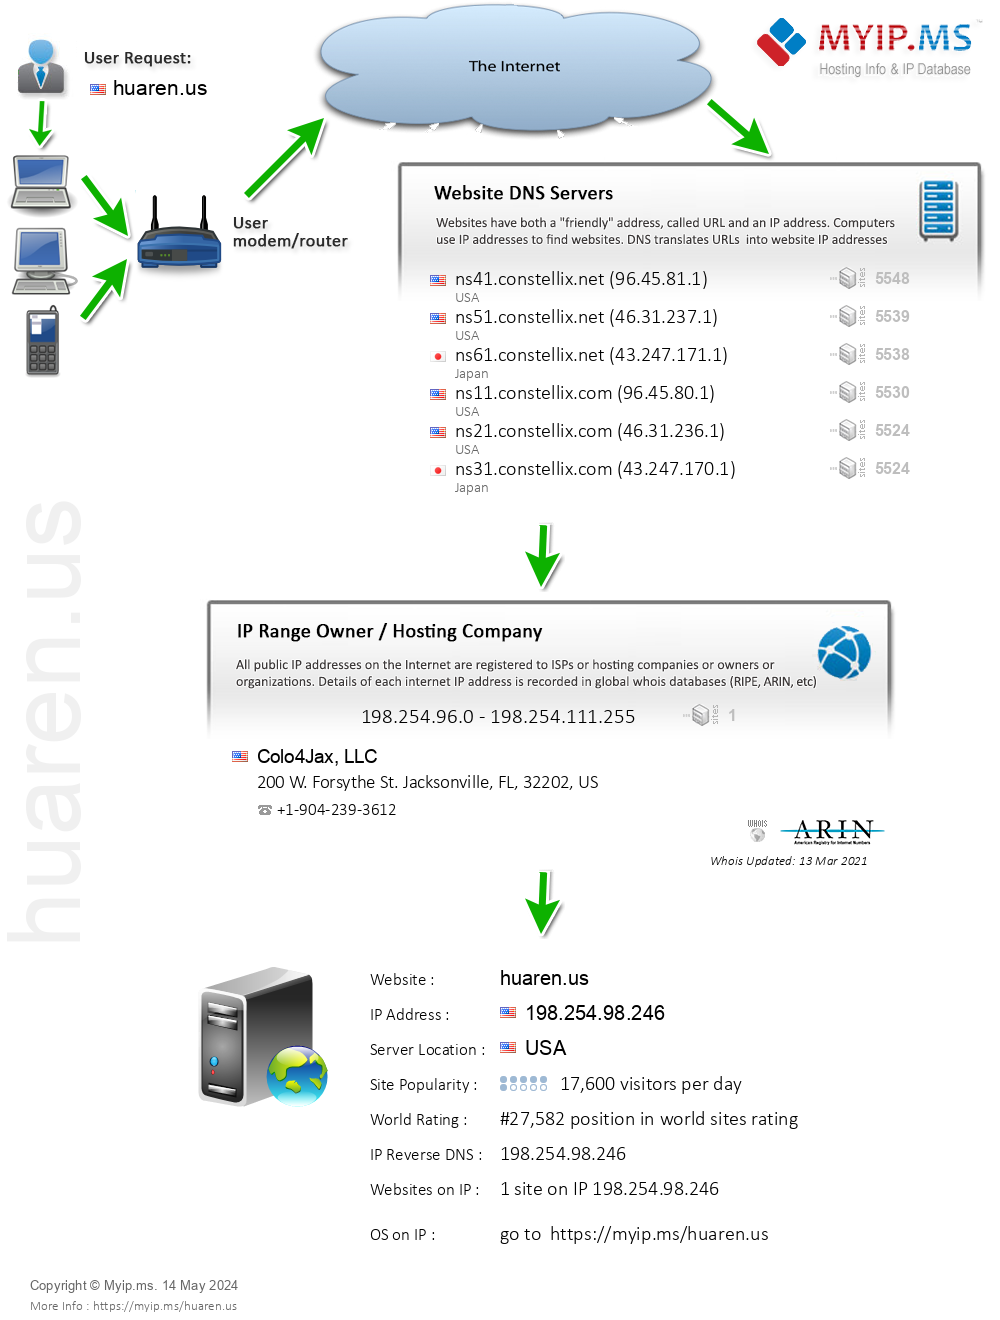 Huaren.us - Website Hosting Visual IP Diagram